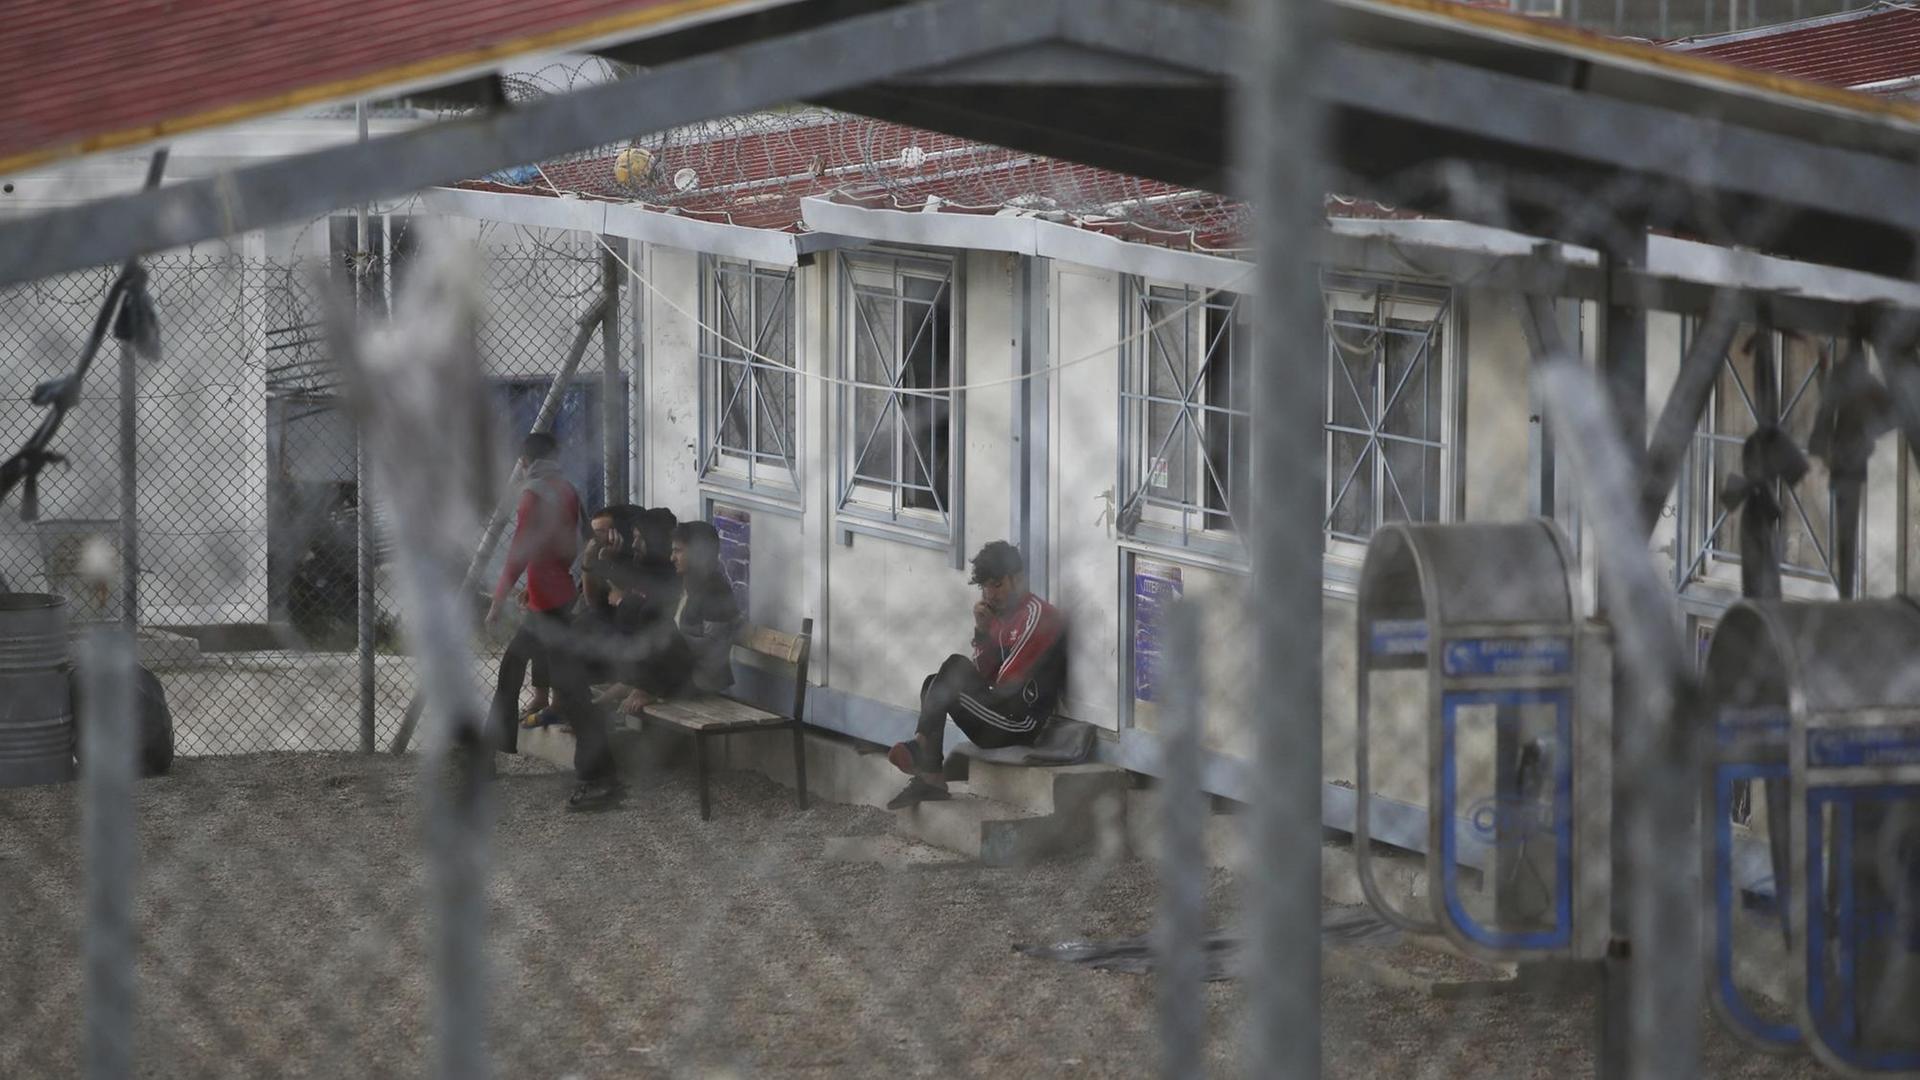 Griechenland, Fylakio: Migranten, die nach der Überfahrt von der Türkei nach Griechenland verhaftet wurden, befinden sich in einem Auffanglager an der griechisch-türkischen Grenze. (Archivbild)